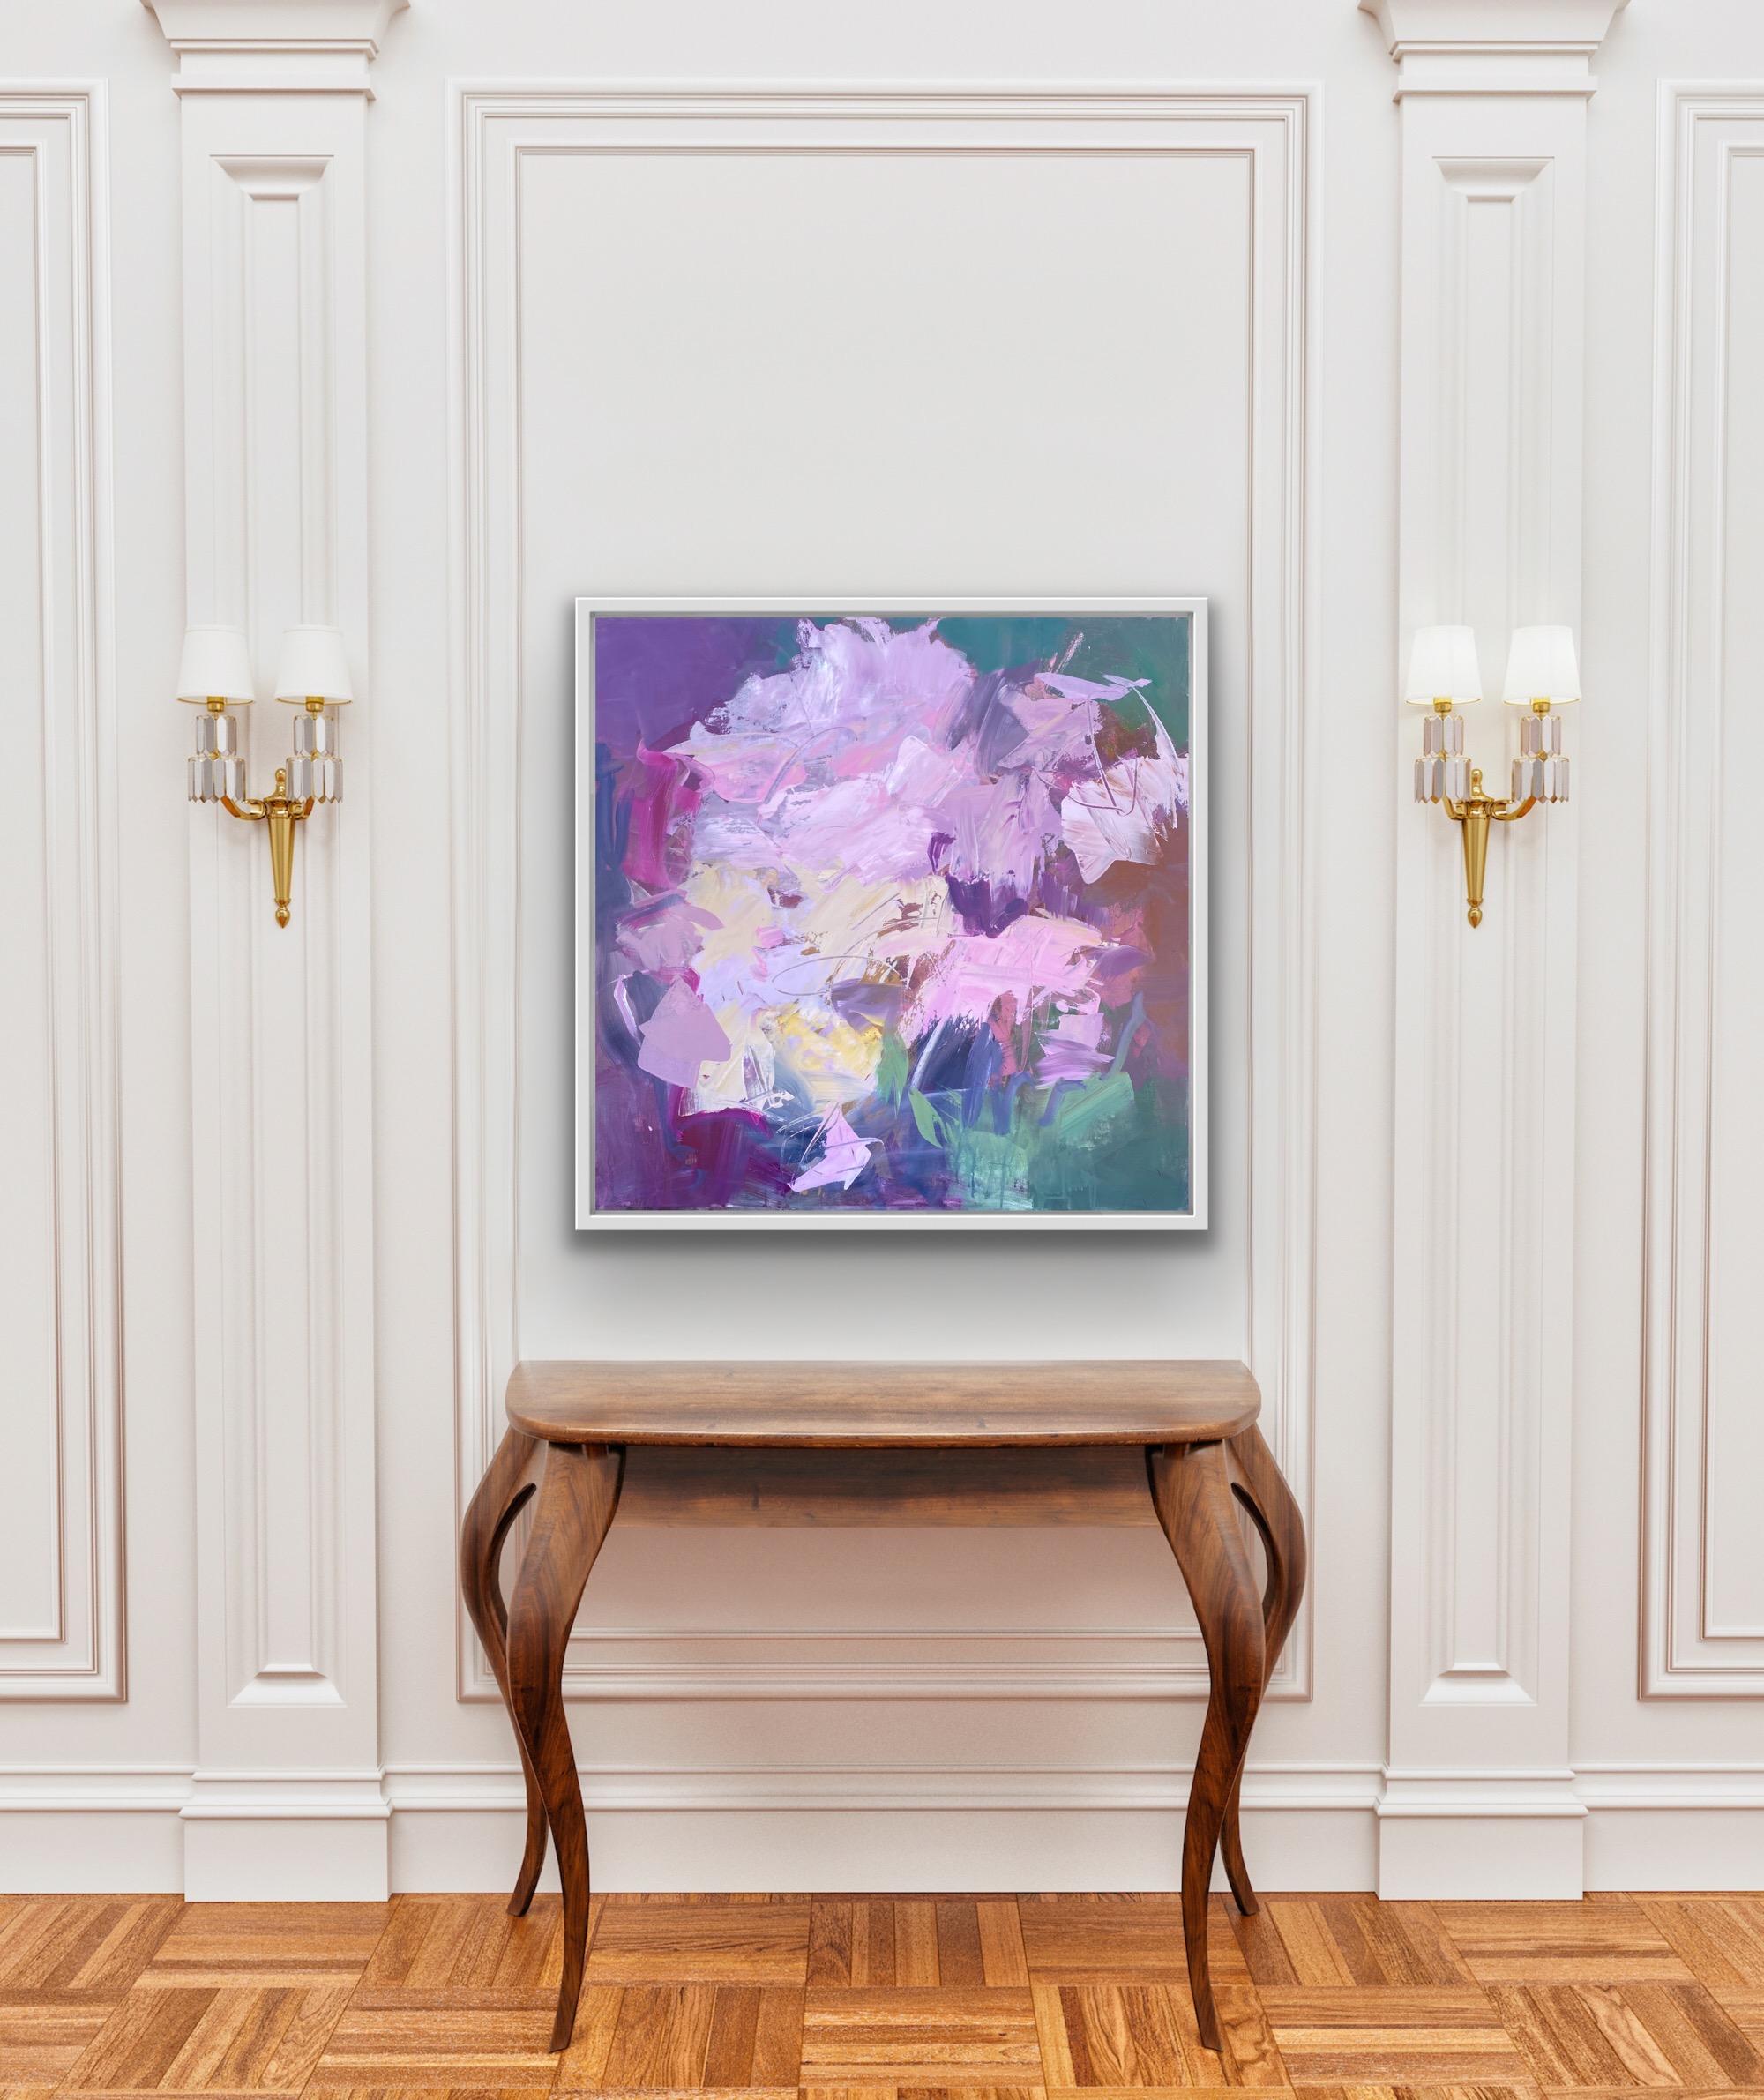 Abstrahierte Blüten setzen ein Zeichen.

Michelle Marra, Künstlerin, abstrakte Gemälde zum Verkauf online und in unserer Gallery Art. Ich sehe in Schwaden von Farbe, Textur und Licht. Ich lasse mich von der lyrischen Bewegung und den biomorphen